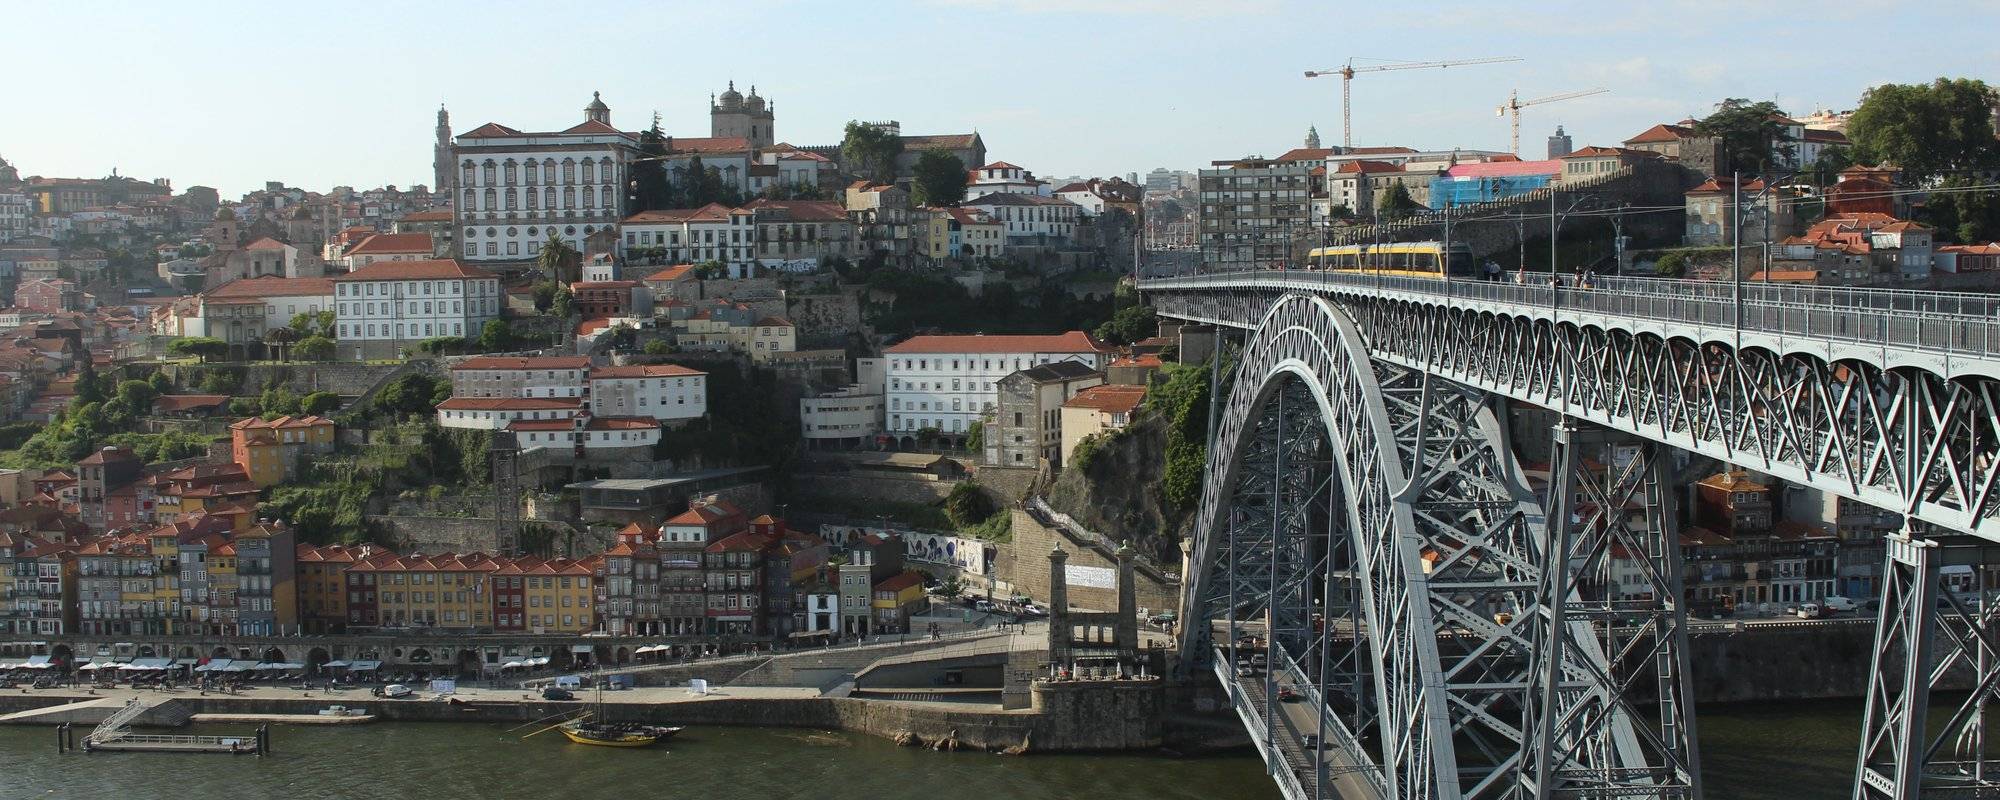 Porto (Portugal):Dom Luís I Bridge Euro trip -Day 8 歐遊歷險(波圖-葡萄牙)-第八天[路易一世大橋]